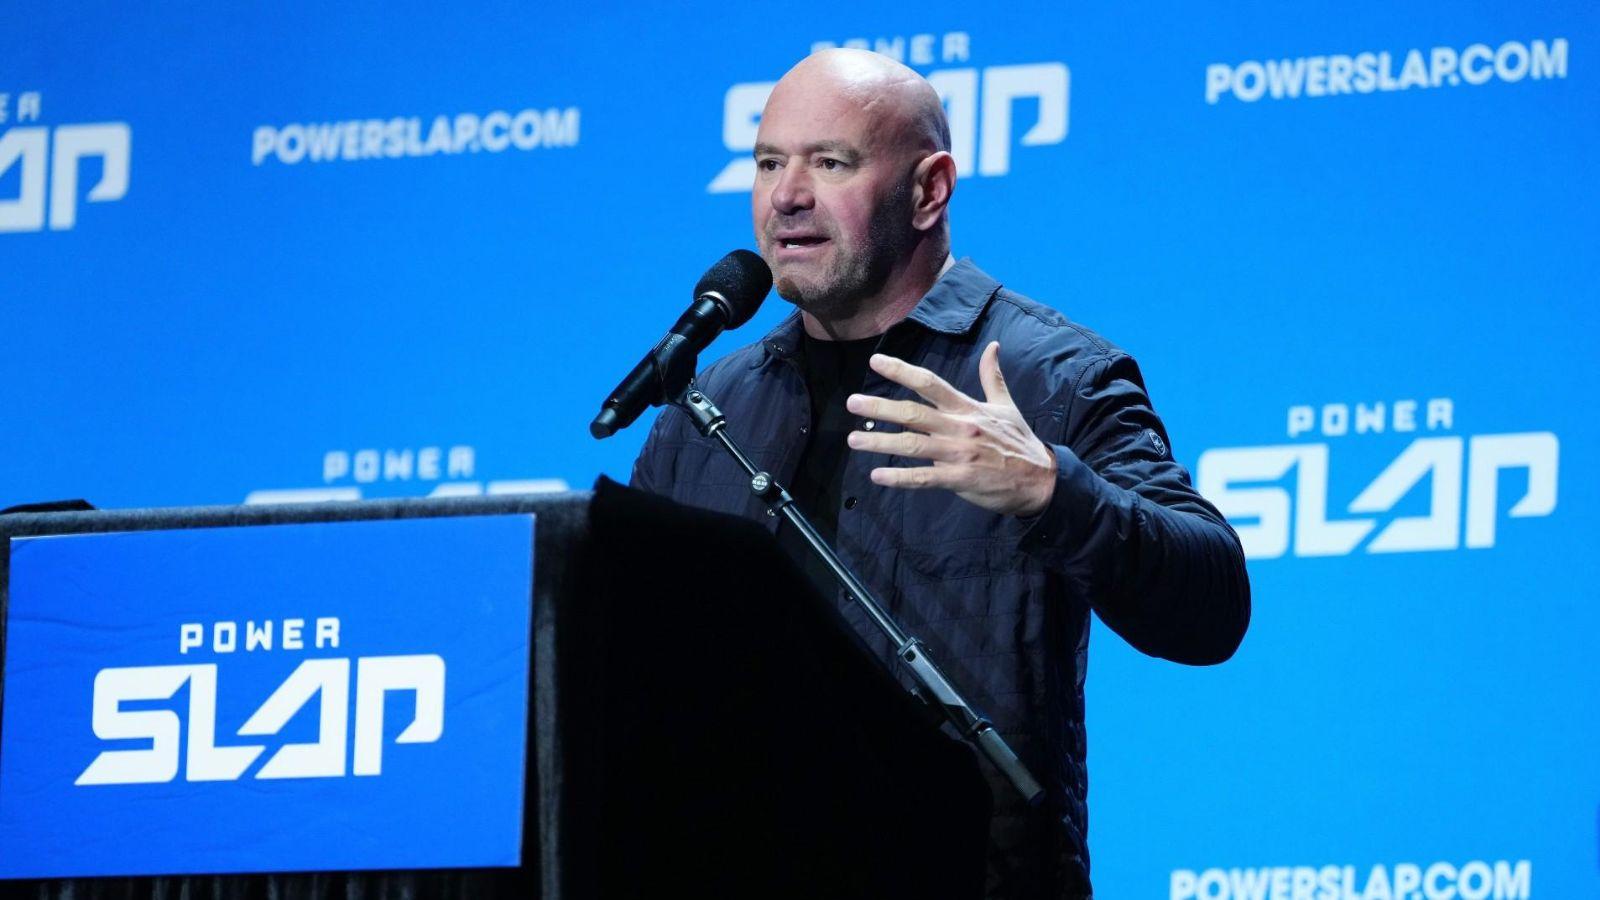 UFC president Dana White teases upcoming Power Slap video game